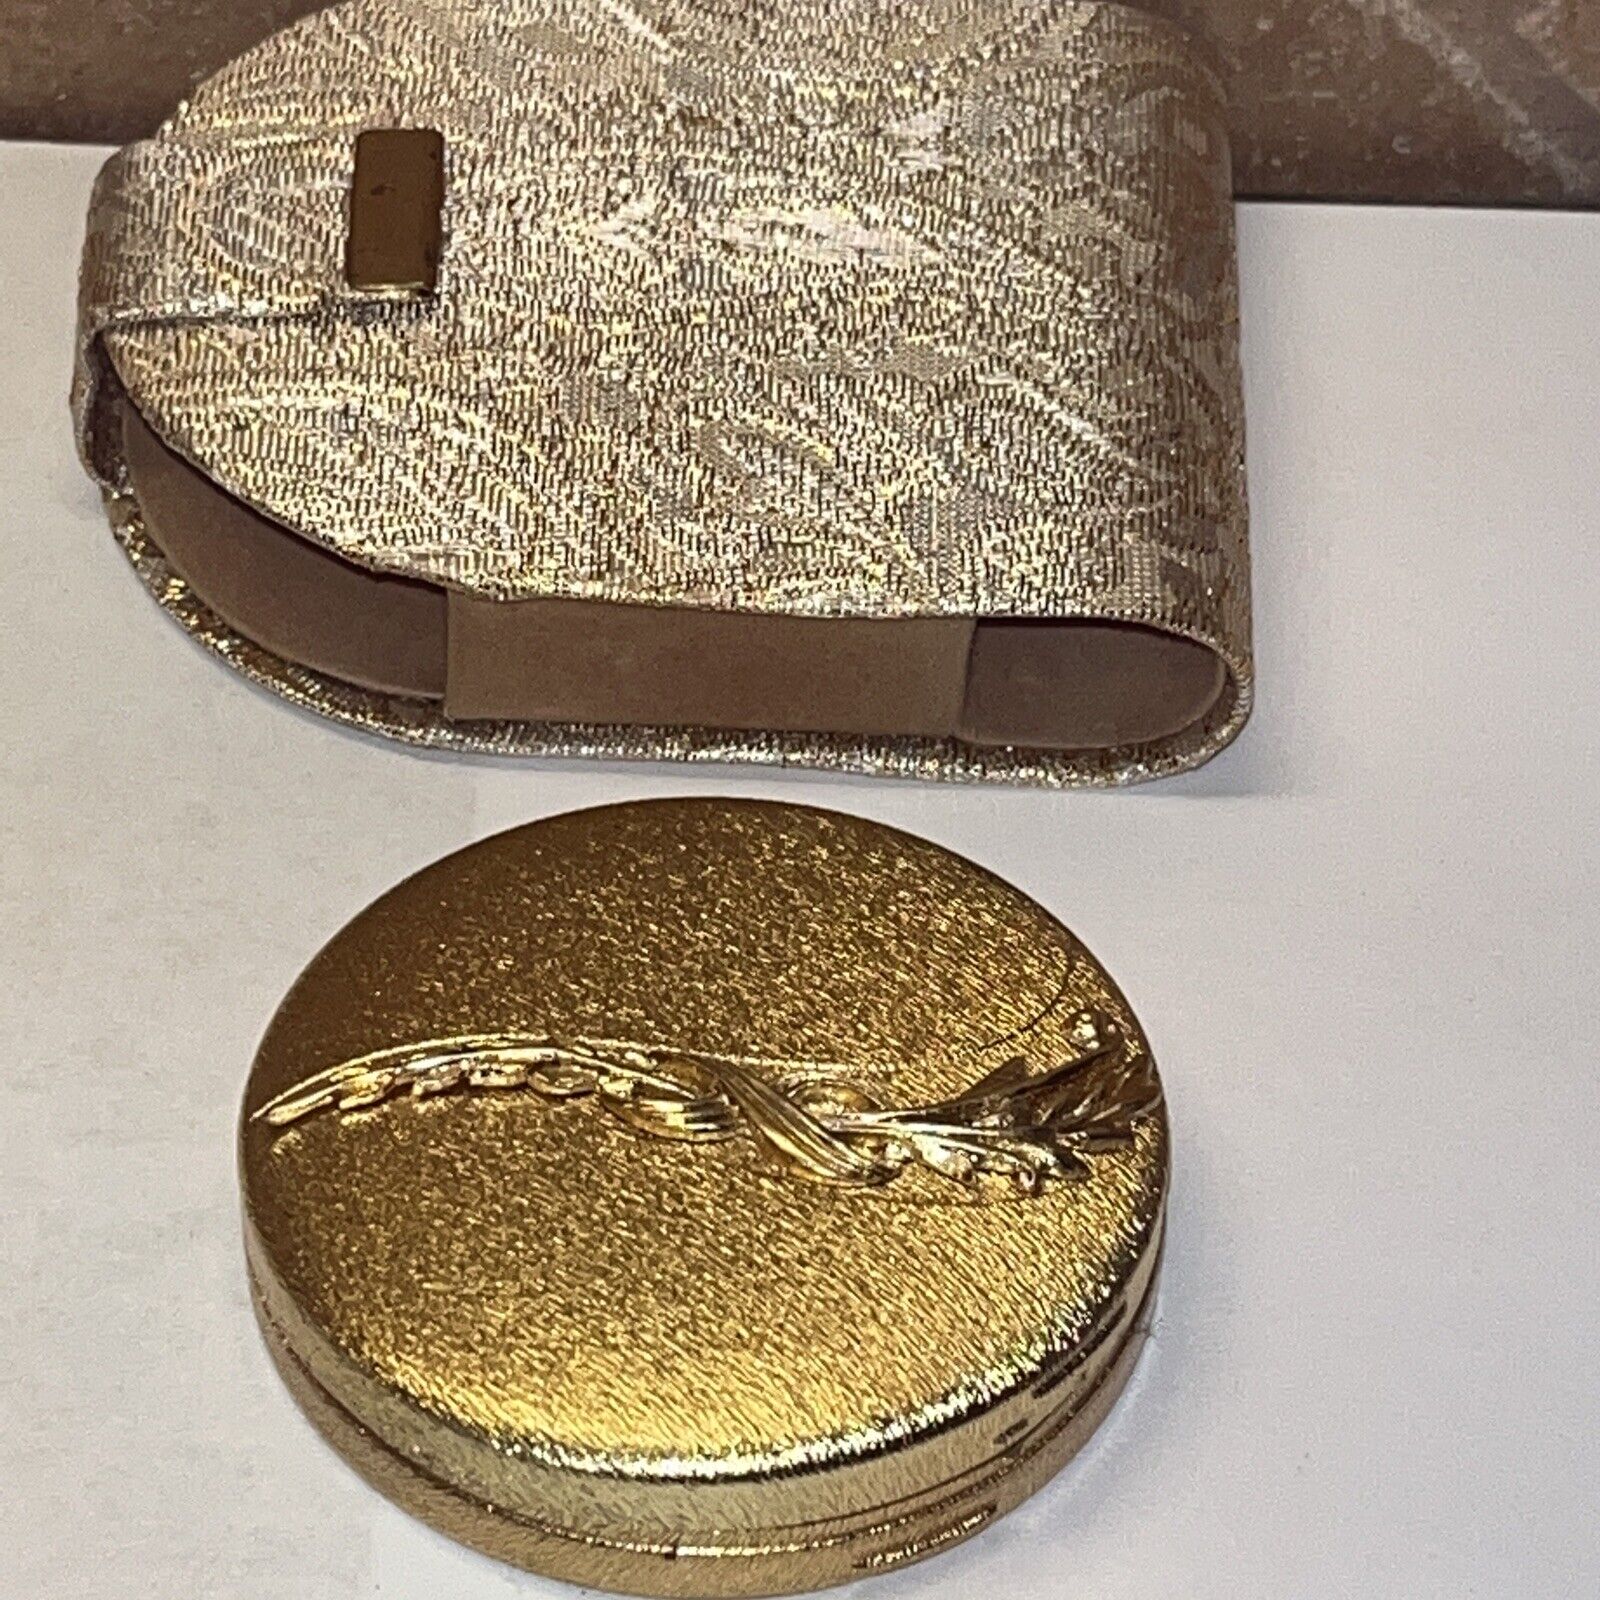 Vintage Du Barry Gold Compact DuBarry & Case Cloud silk Rose Beige